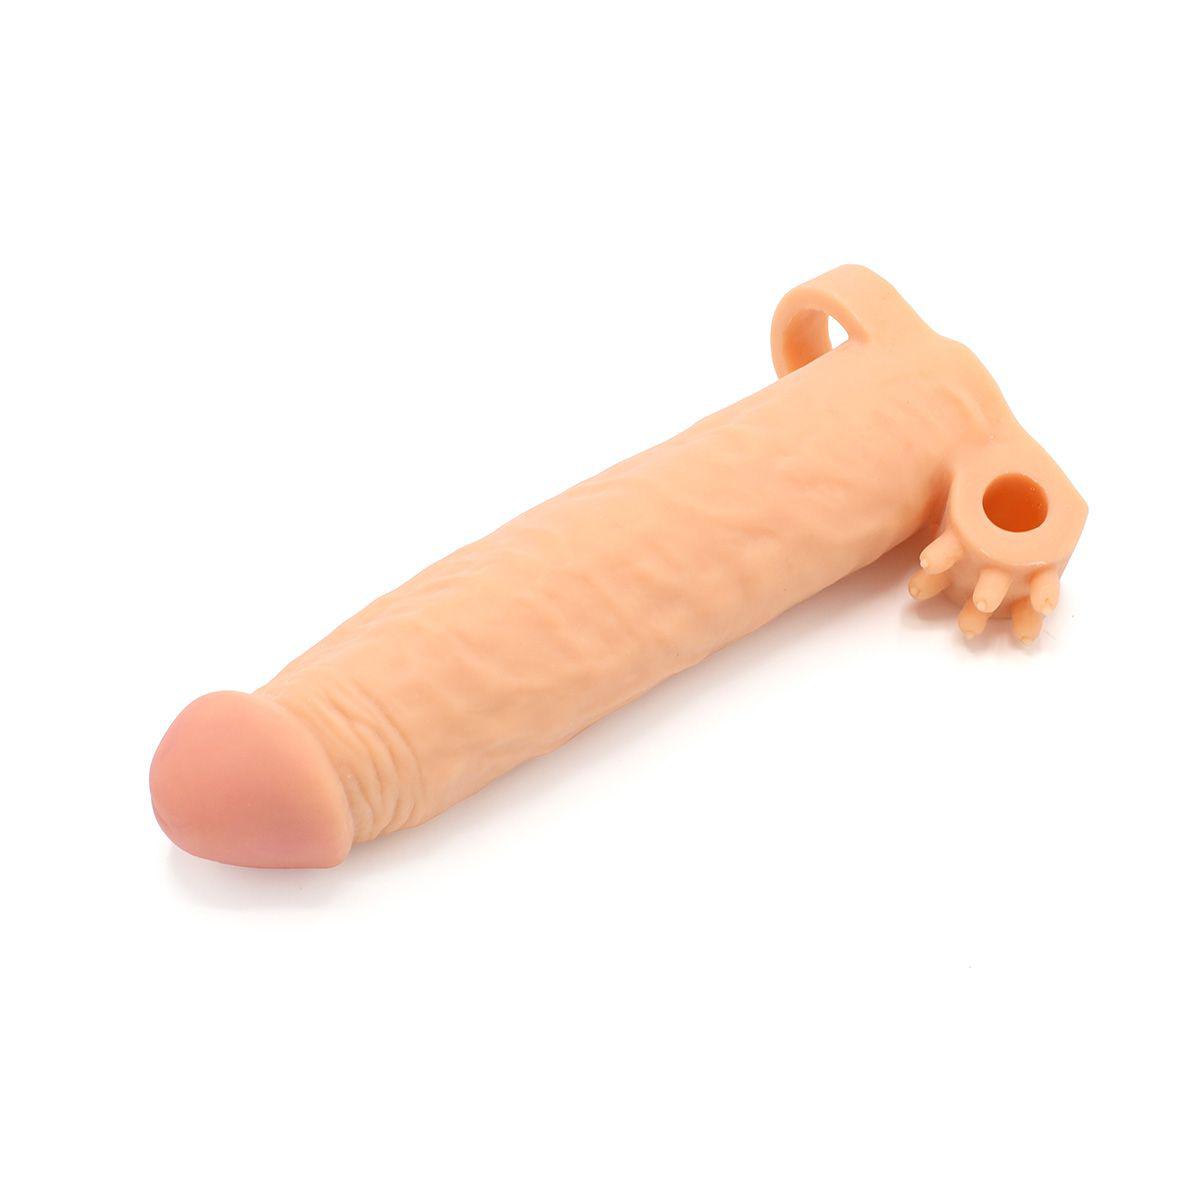 Kiotos Realistic Penis Sleeve van 19 cm met Vibrator Bullet Houder en Ball Stretcher - Boost Je Intieme Momenten!-Erotiekvoordeel.nl